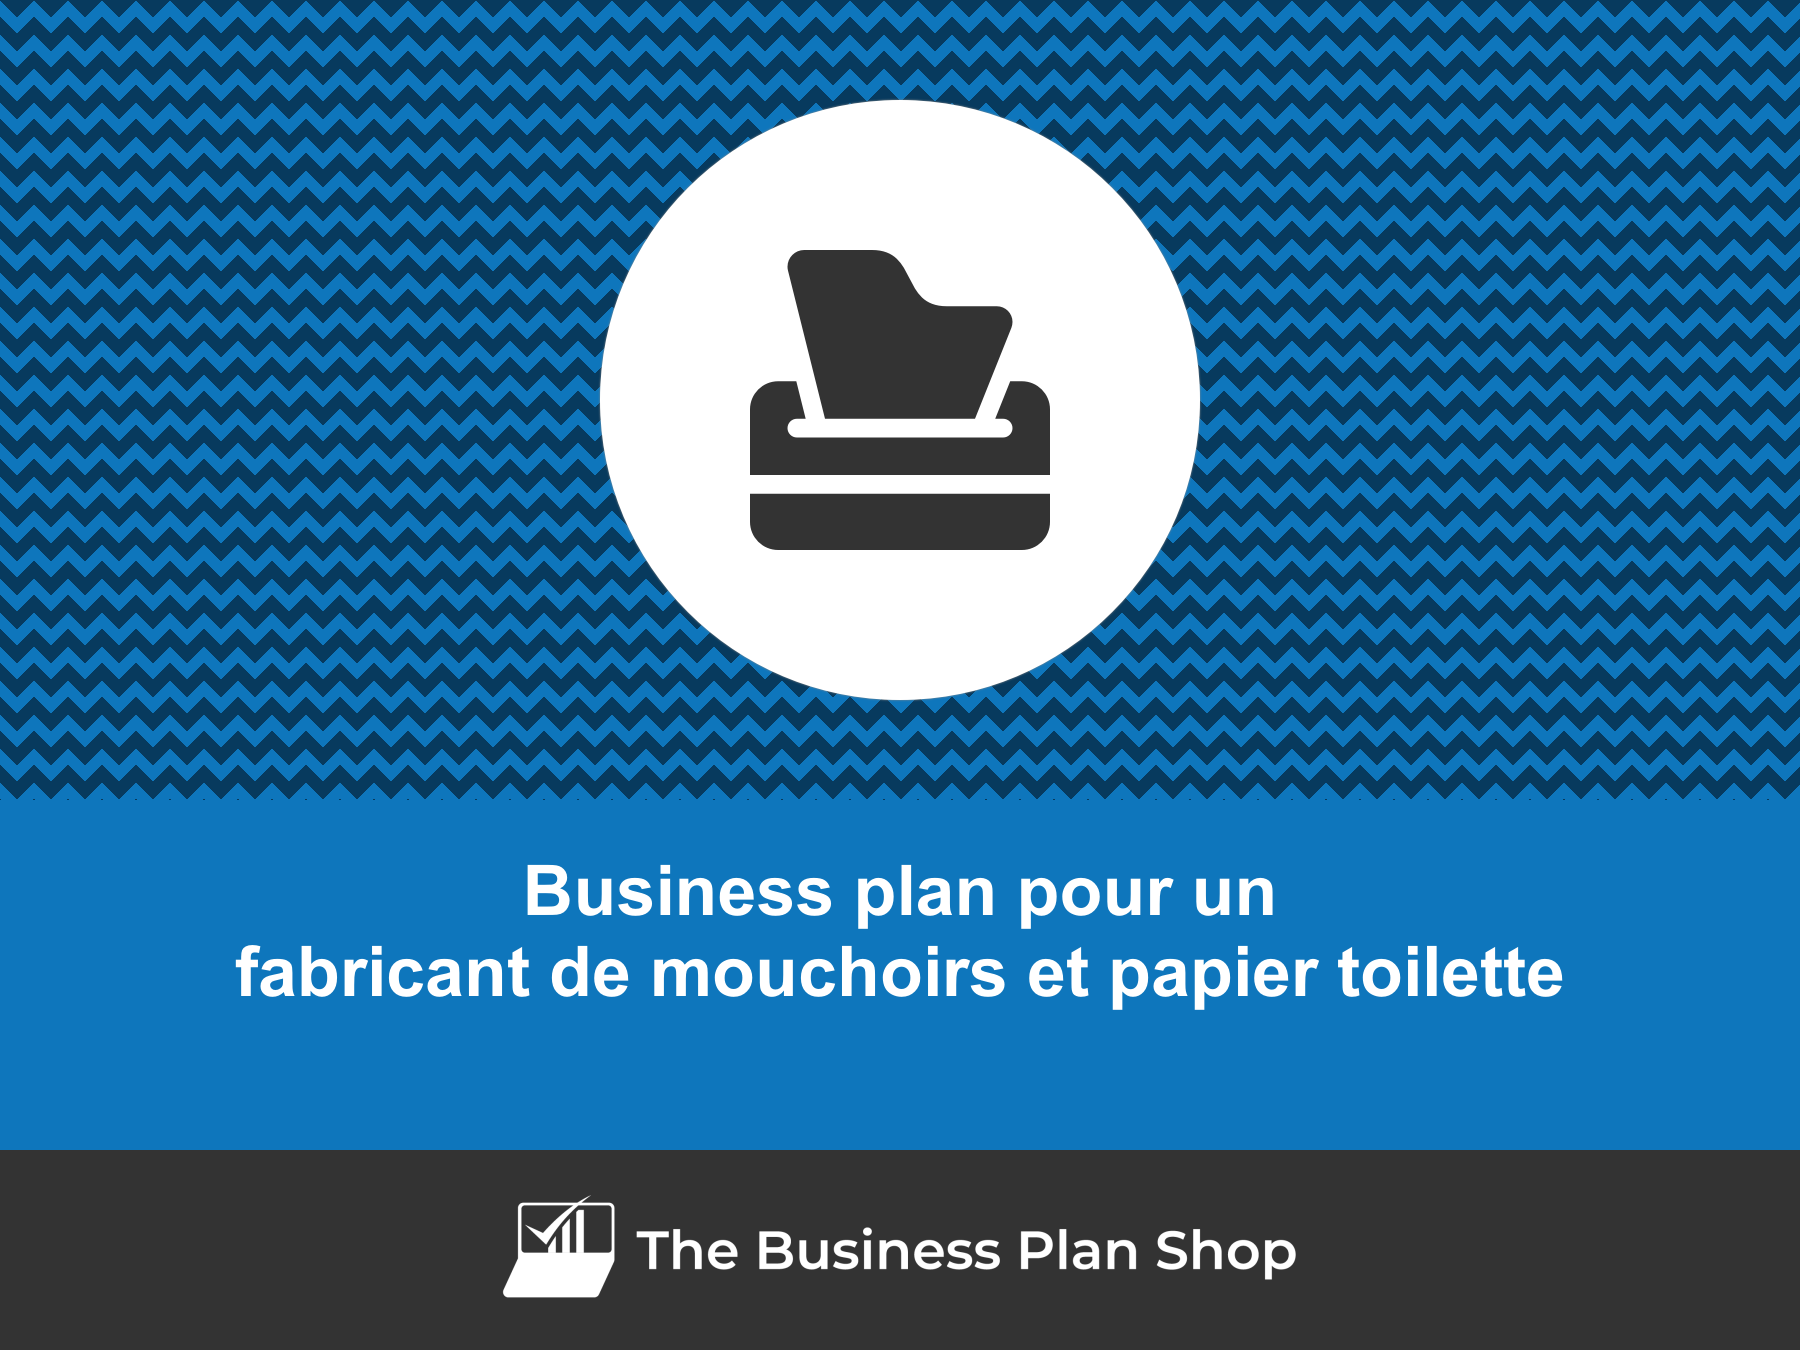 Le système d'enroulement des mouchoirs en papier permet au fabricant d'économiser  40 000 € et d'améliorer la durabilité